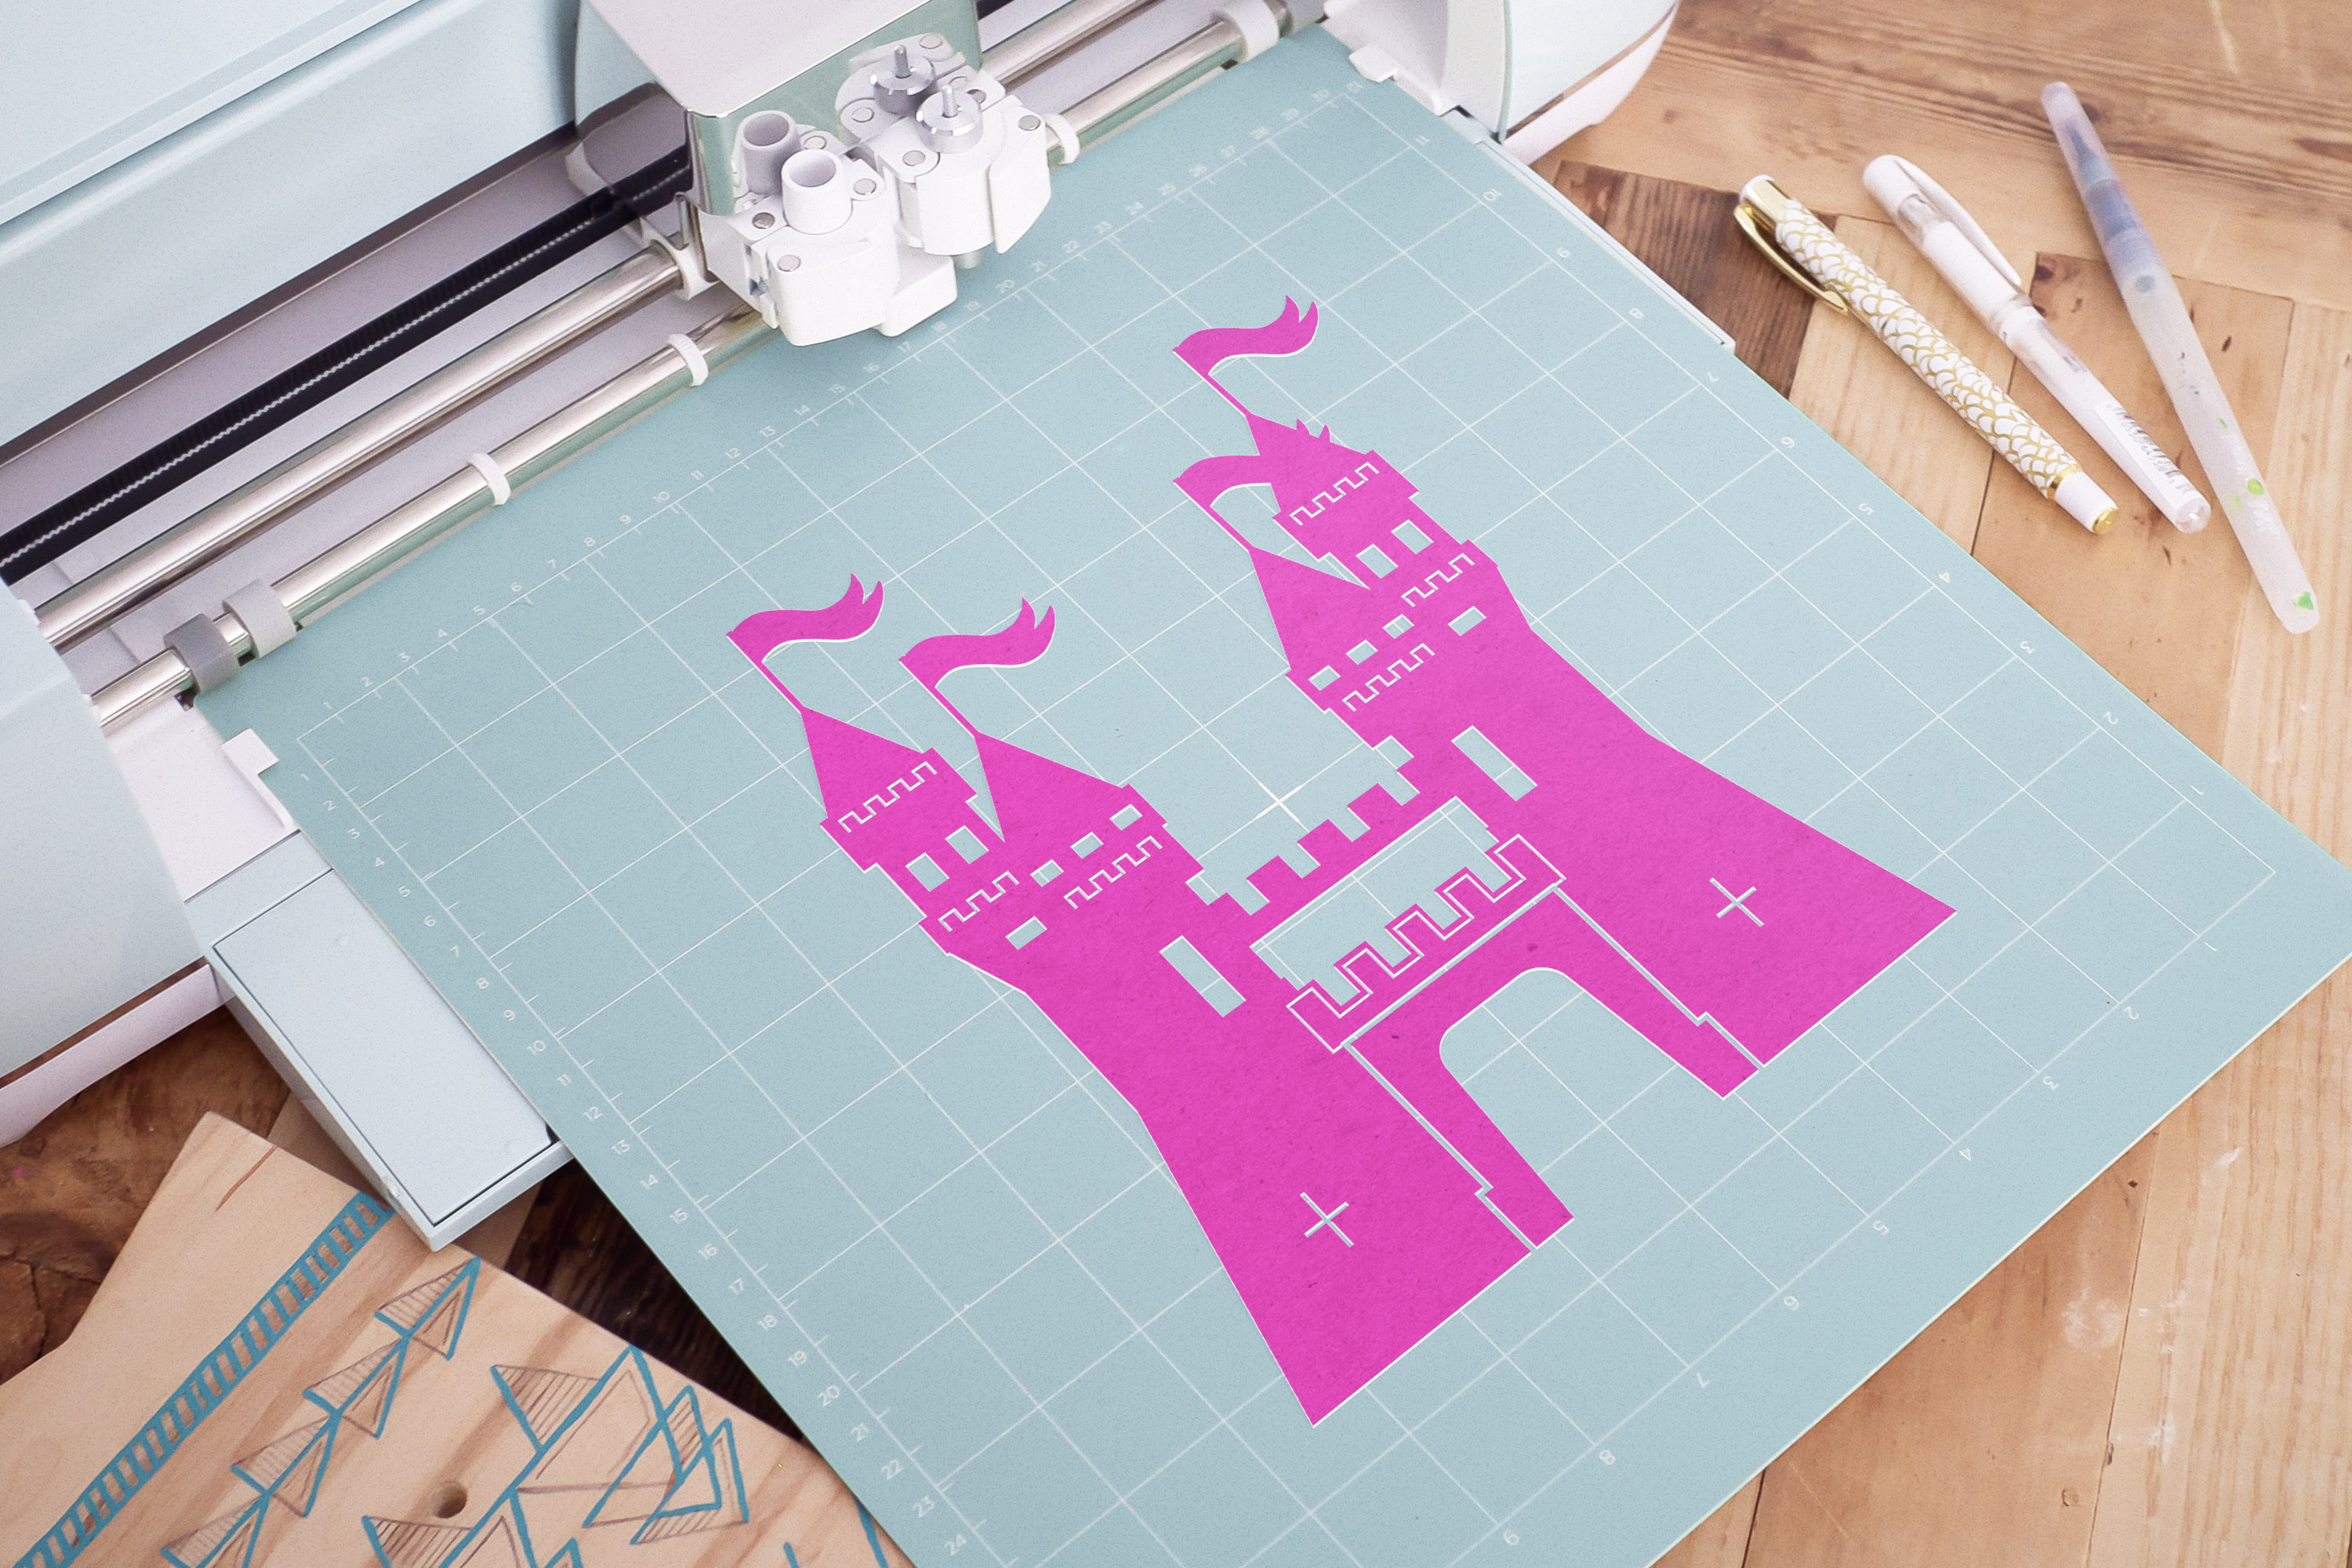 Download Princess Castle SVG, Princess Castle cut file